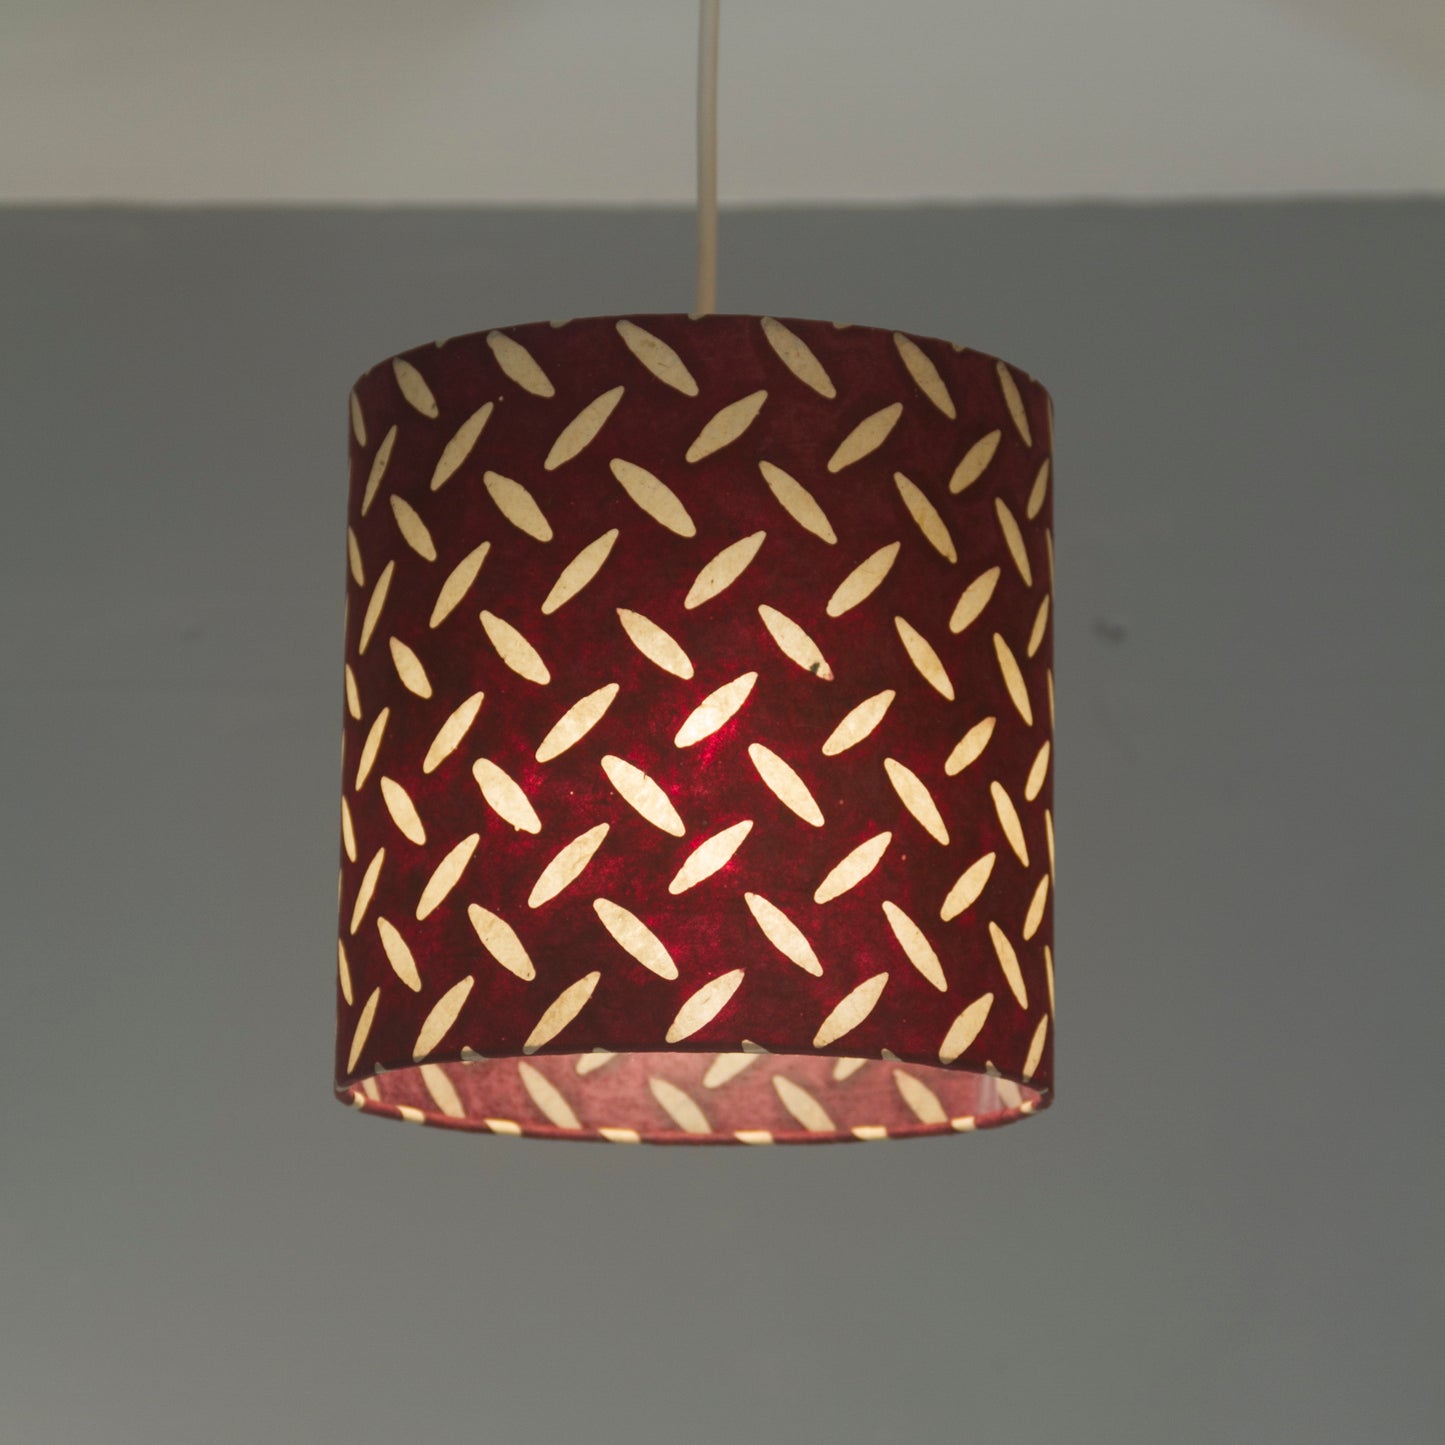 Oval Lamp Shade - P14 - Batik Tread Plate Cranberry, 20cm(w) x 20cm(h) x 13cm(d)